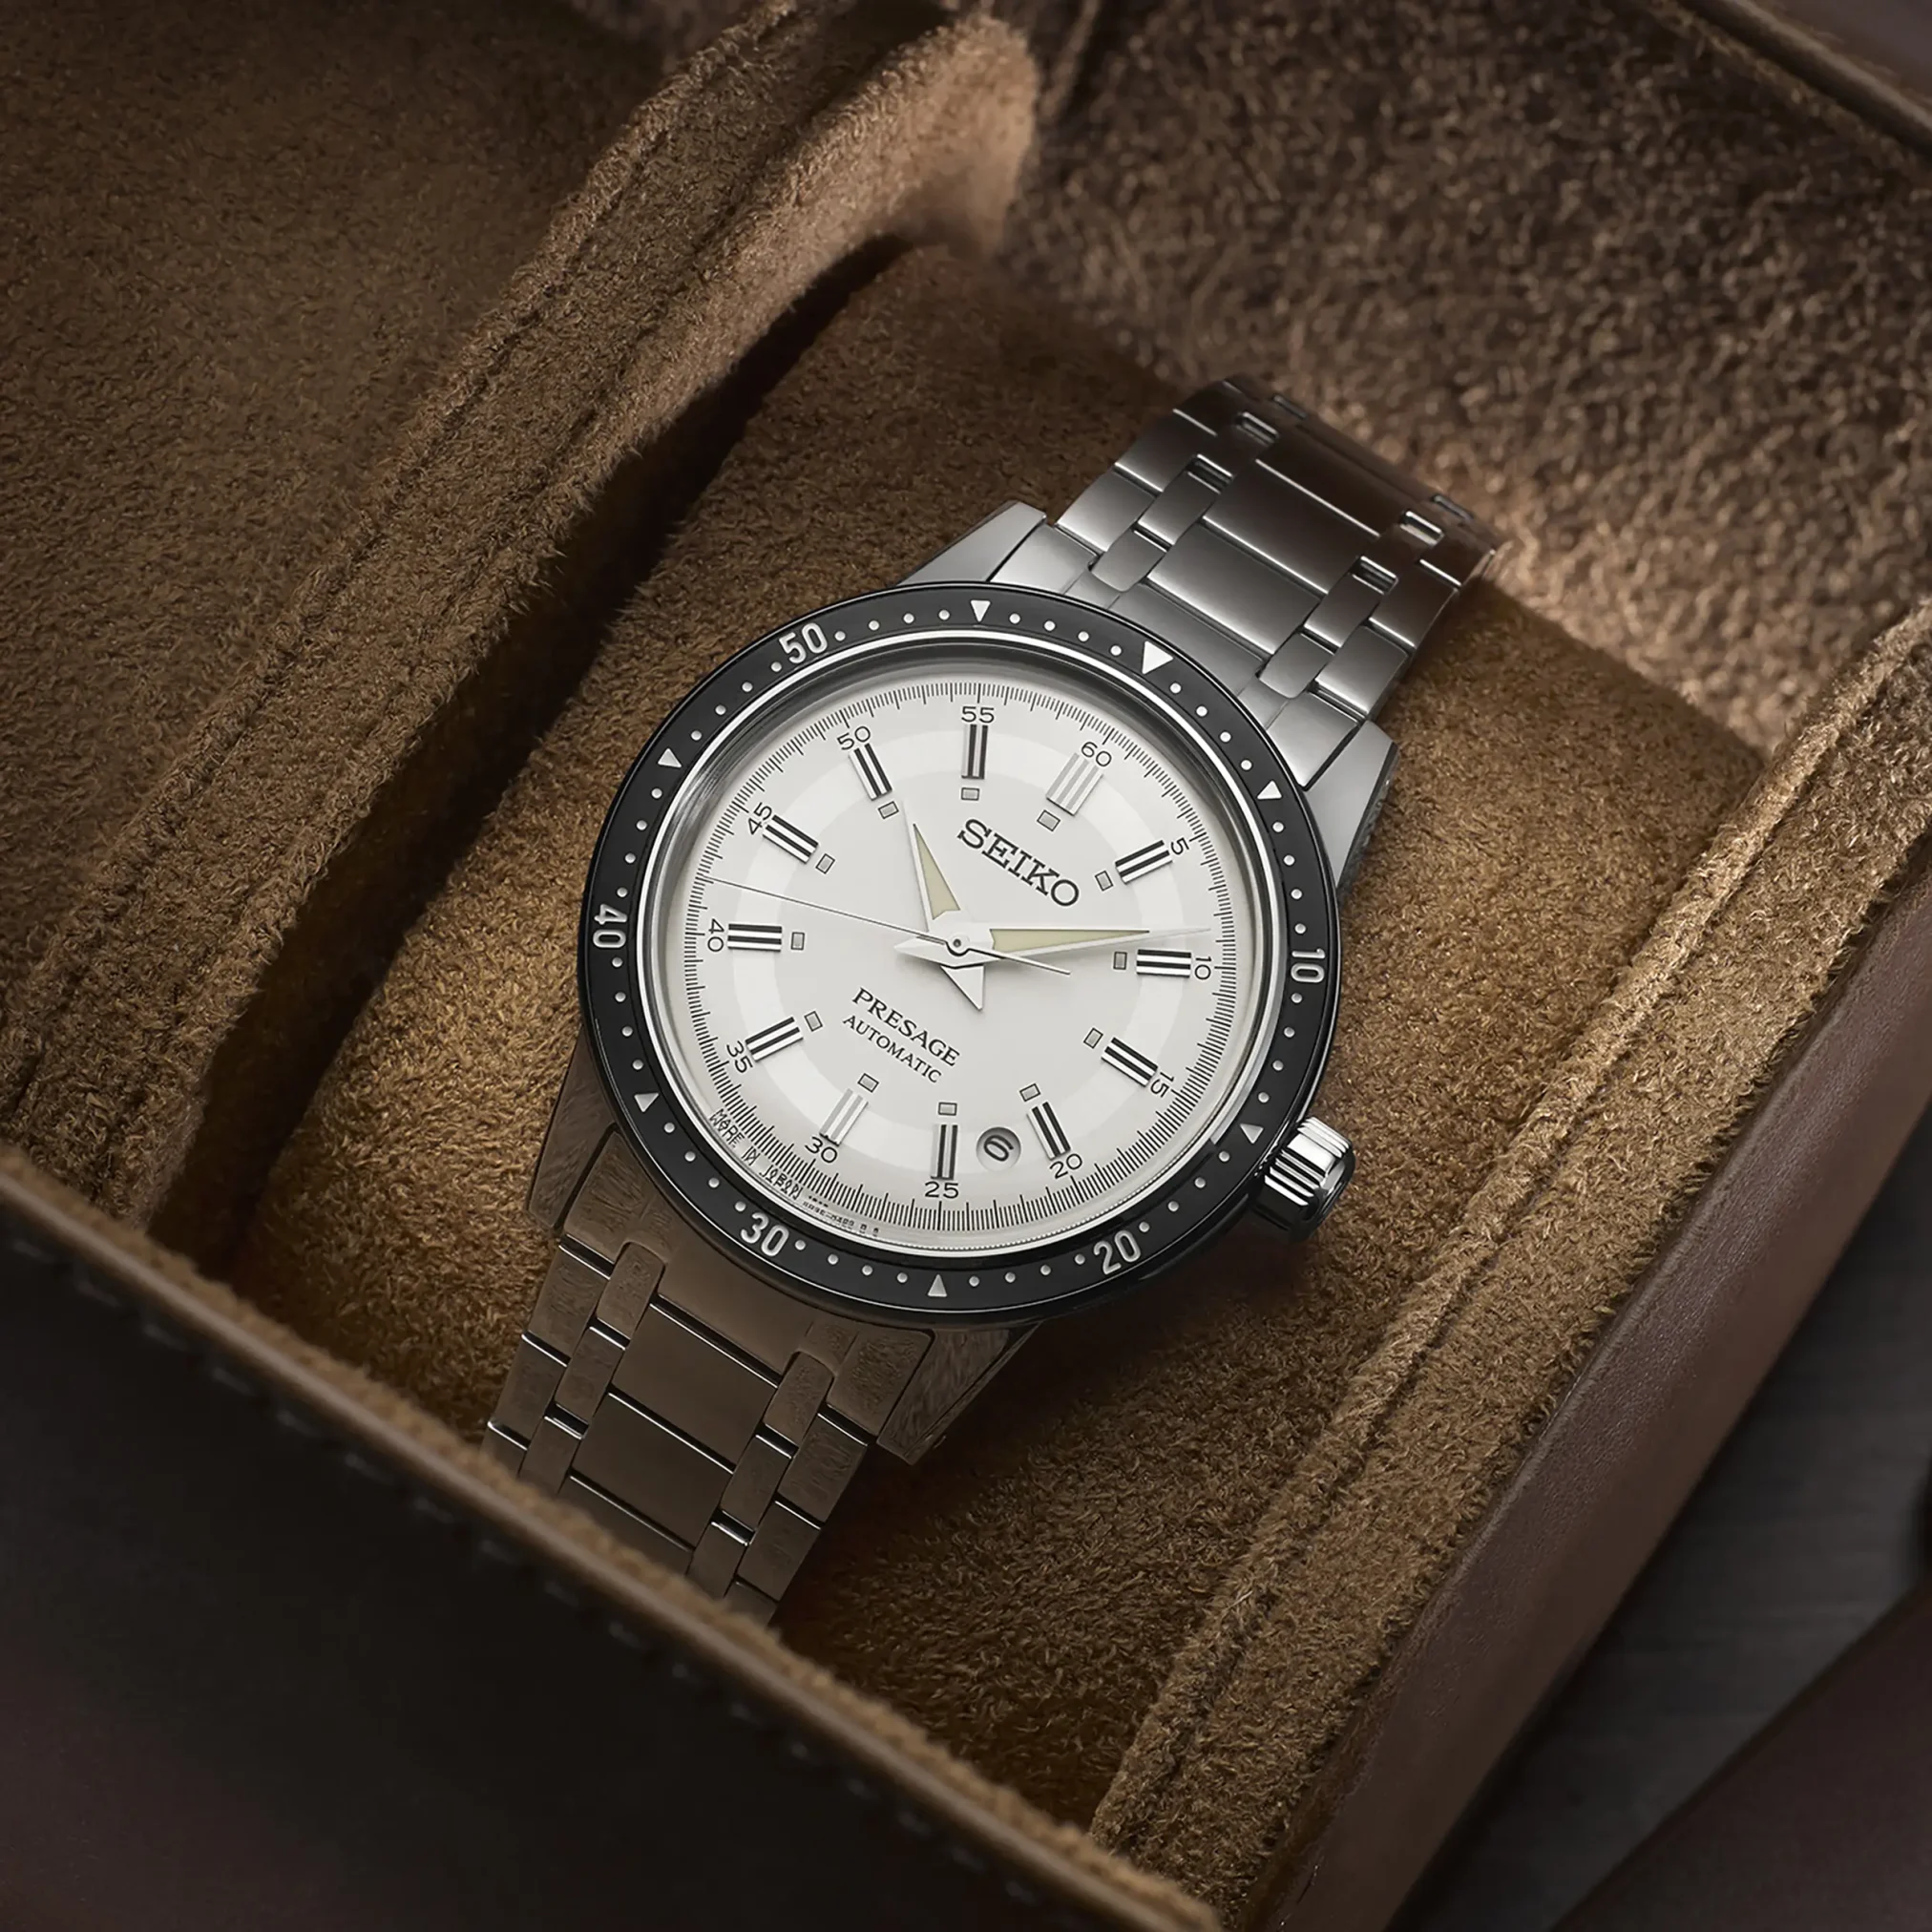 Đồng hồ Seiko Presage Style60's Crown Chronograph 60th Anniversary Limited Edition SRPK61J1 mặt số màu trắng. Dây đeo bằng thép. Thân vỏ bằng thép.